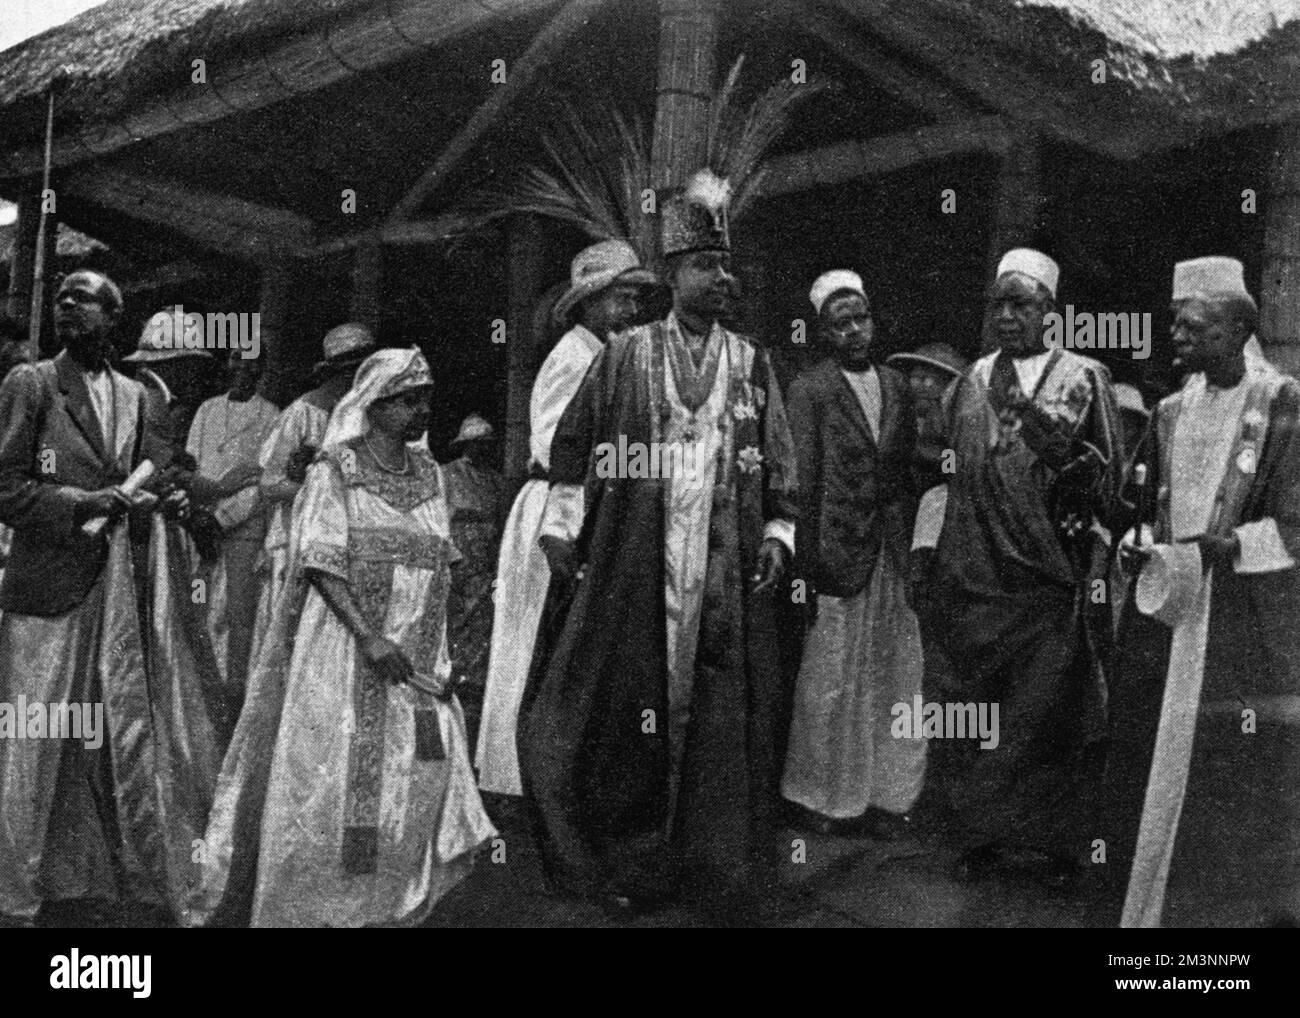 Re Daubi Chwa, la Kabaka di Buganda con la sua consorte, la Regina Irene e i suoi ministri a Mengo. Durante la visita del Duca e della Duchessa di York in Uganda, re Daubi Chwa fu investito dal Duca con il K.C.M.G.. Data: 1925 Foto Stock